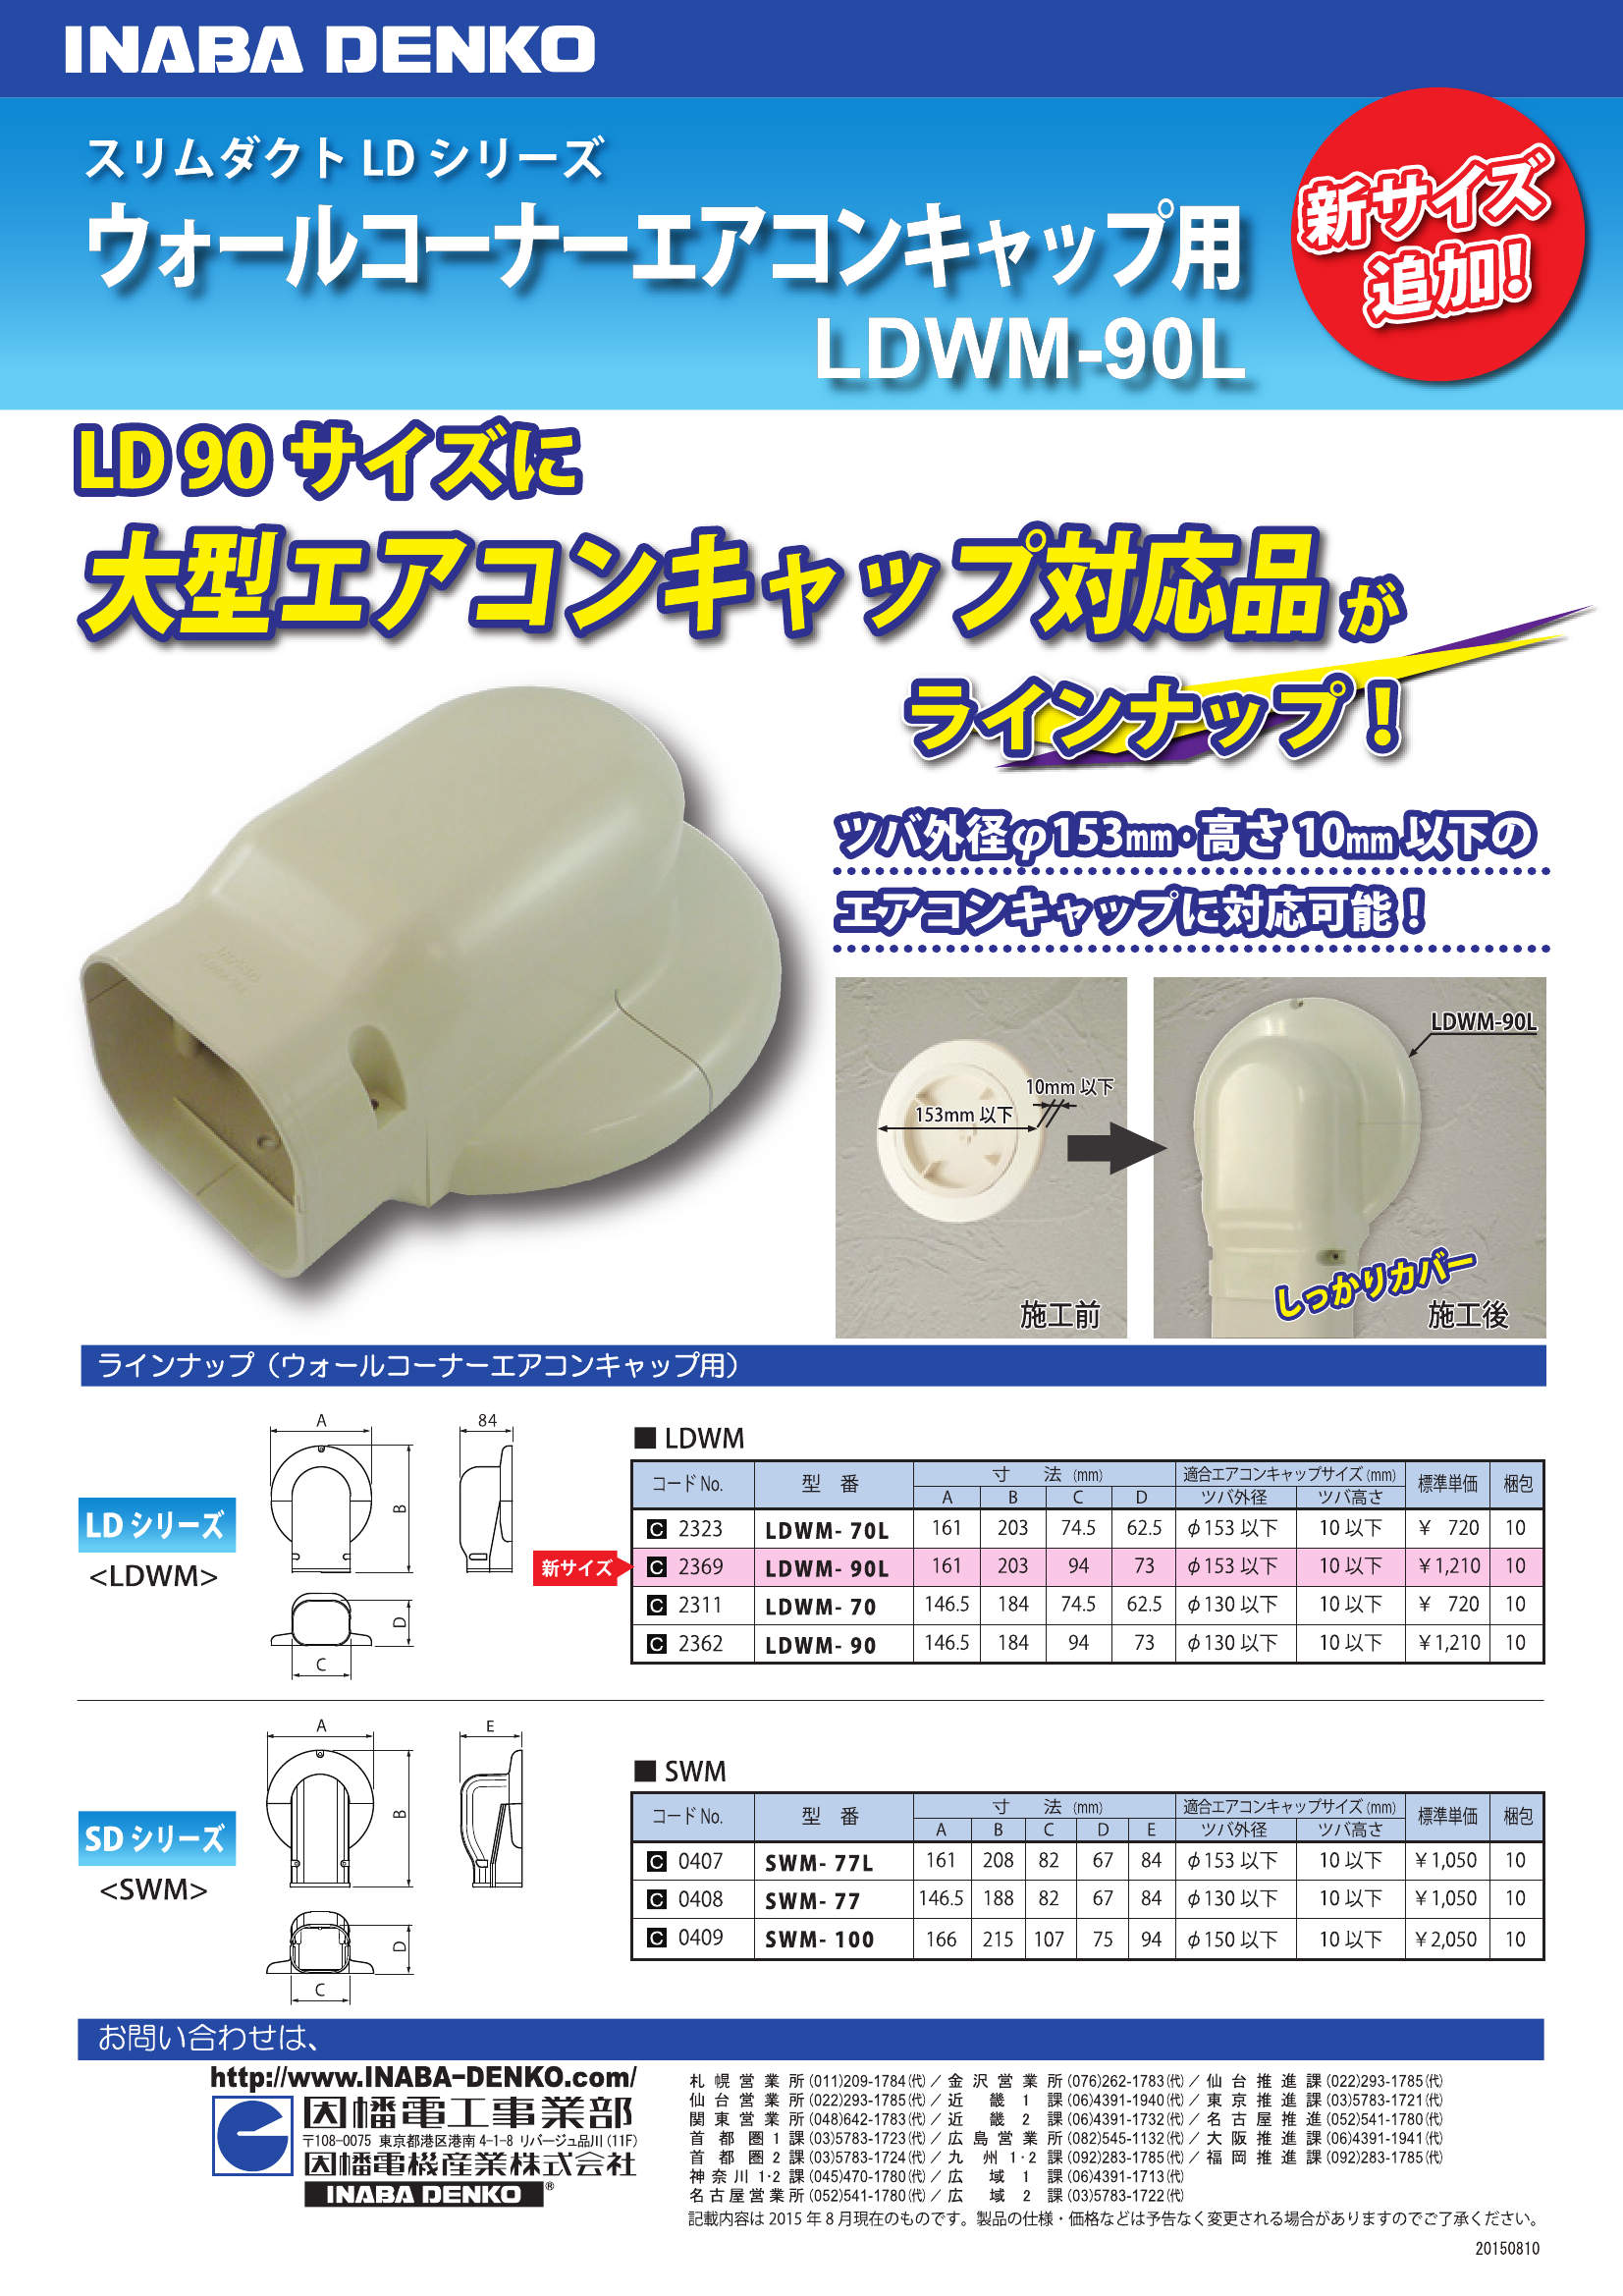 LDWM-90L_製品パンフレット_20150810.pdf